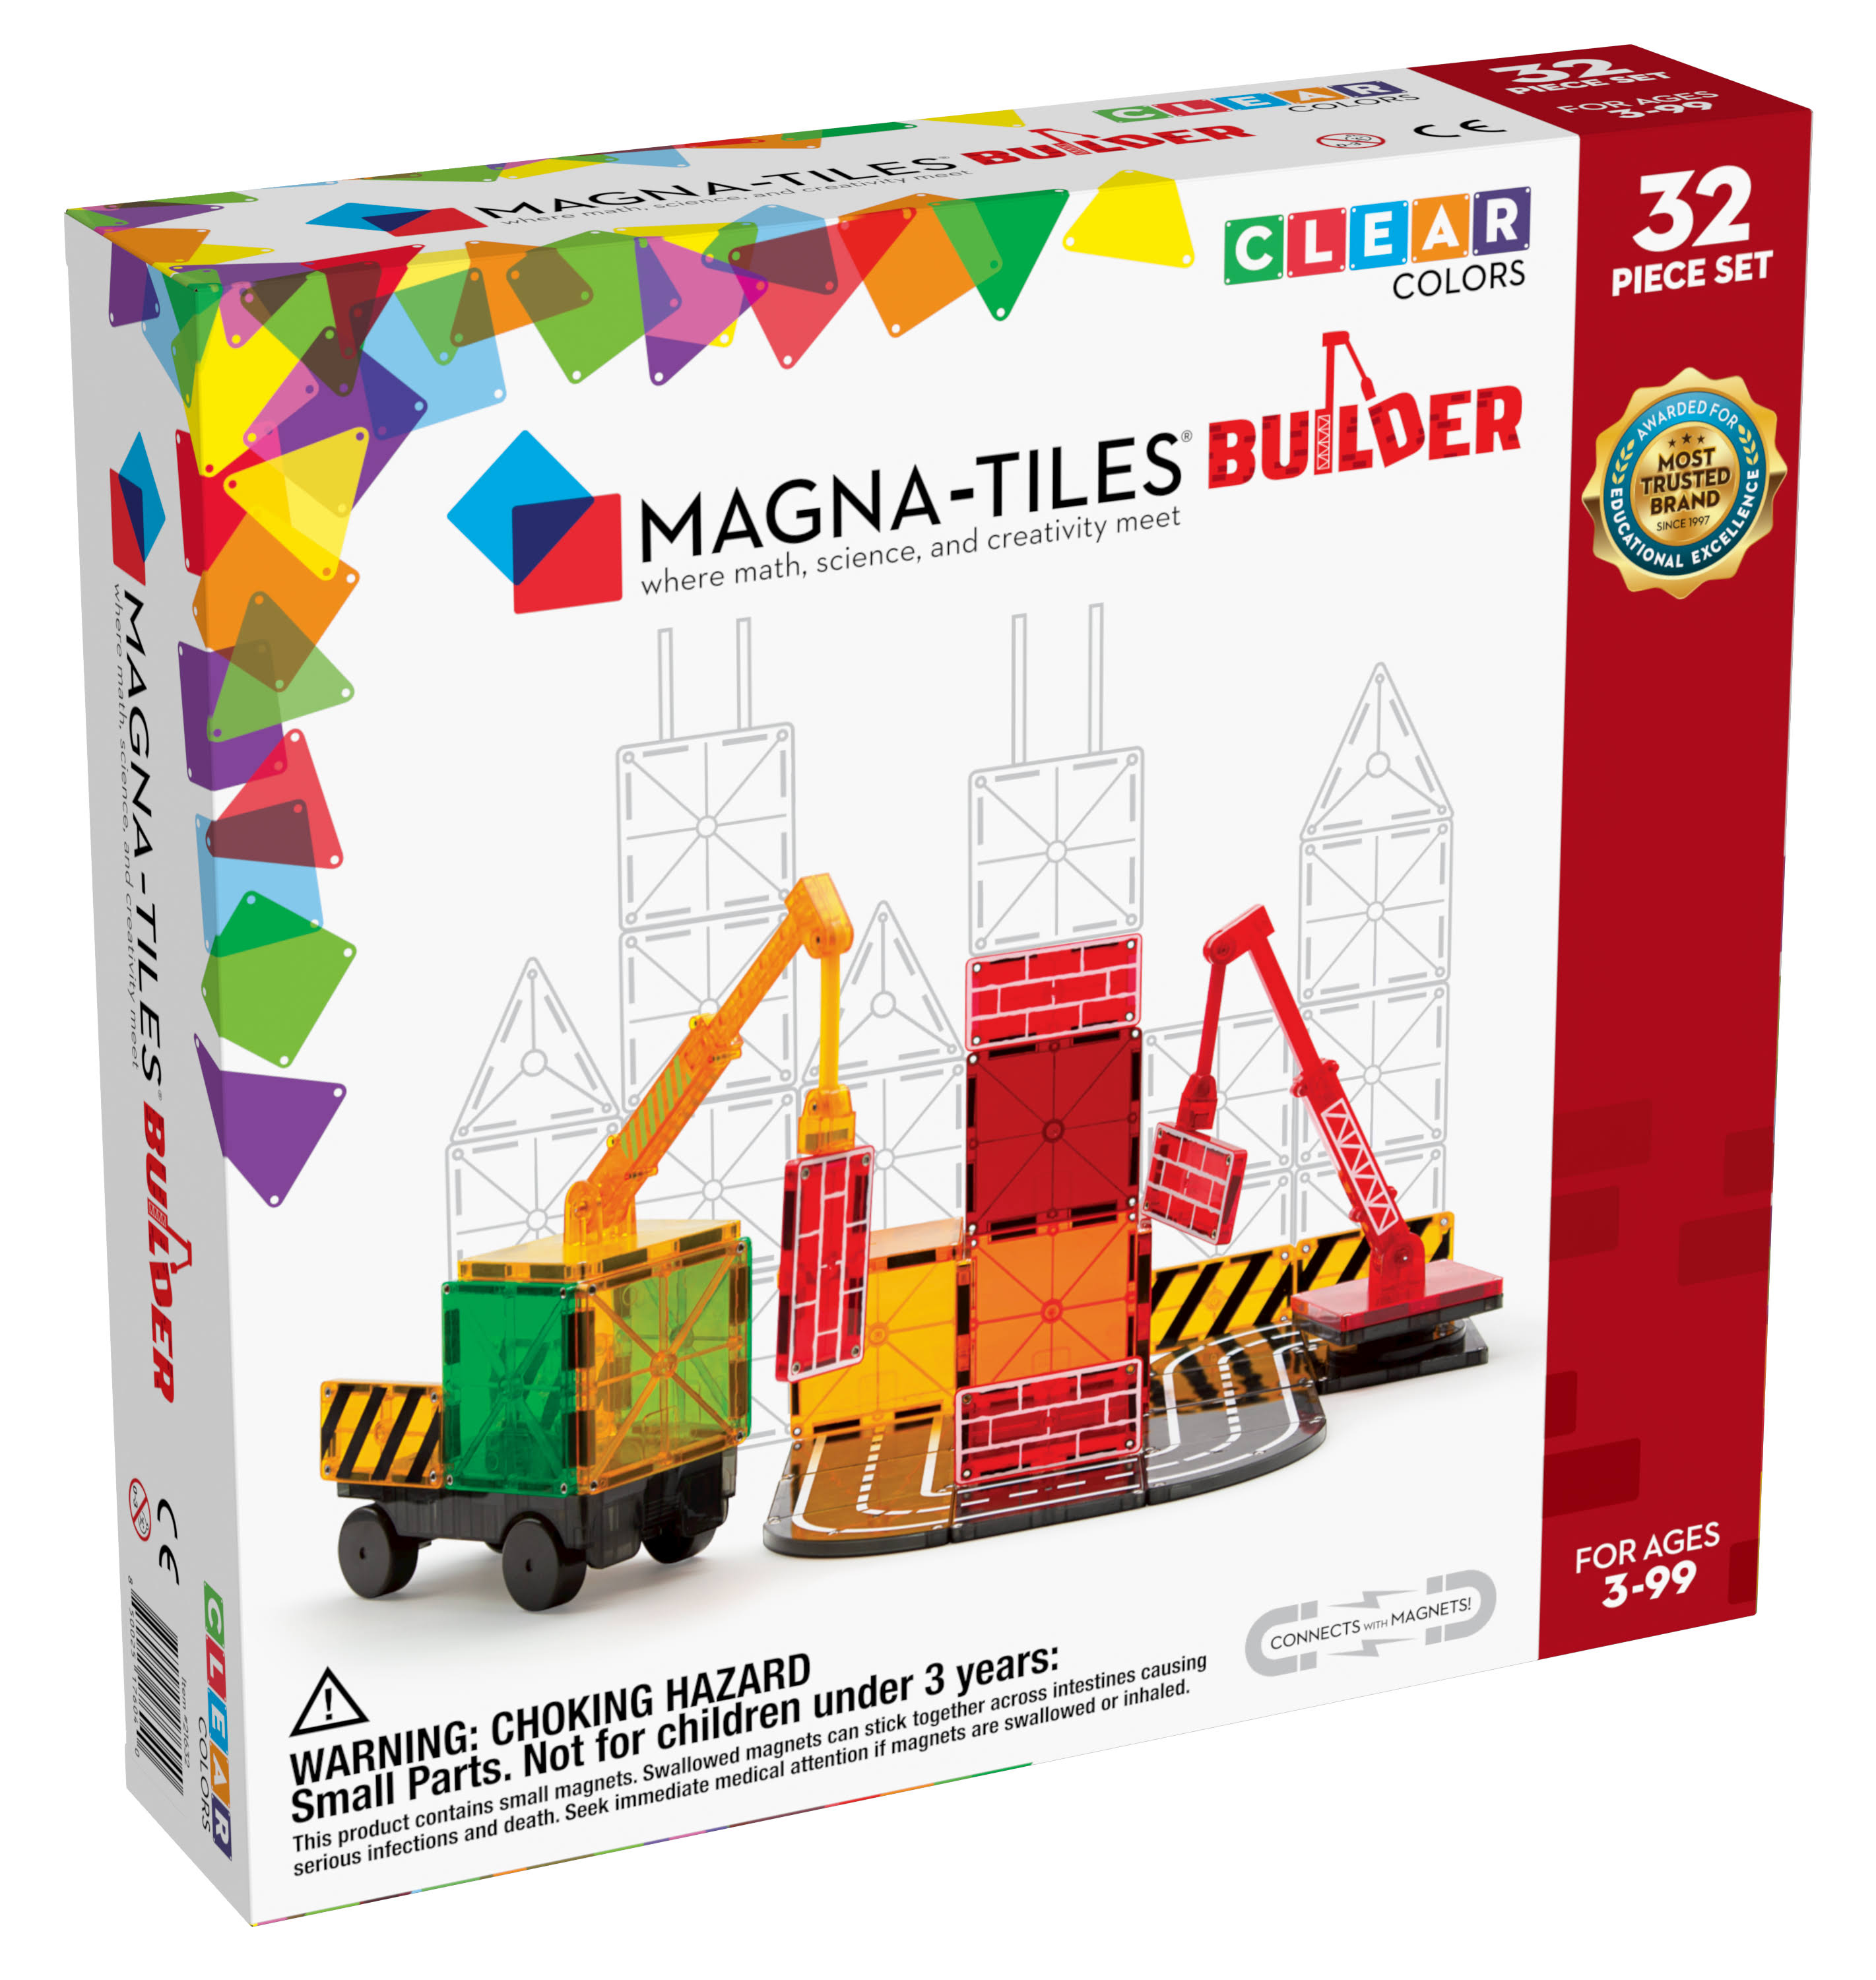 Magna-Tiles Builder Set, The Original Magnetic Building Tiles For